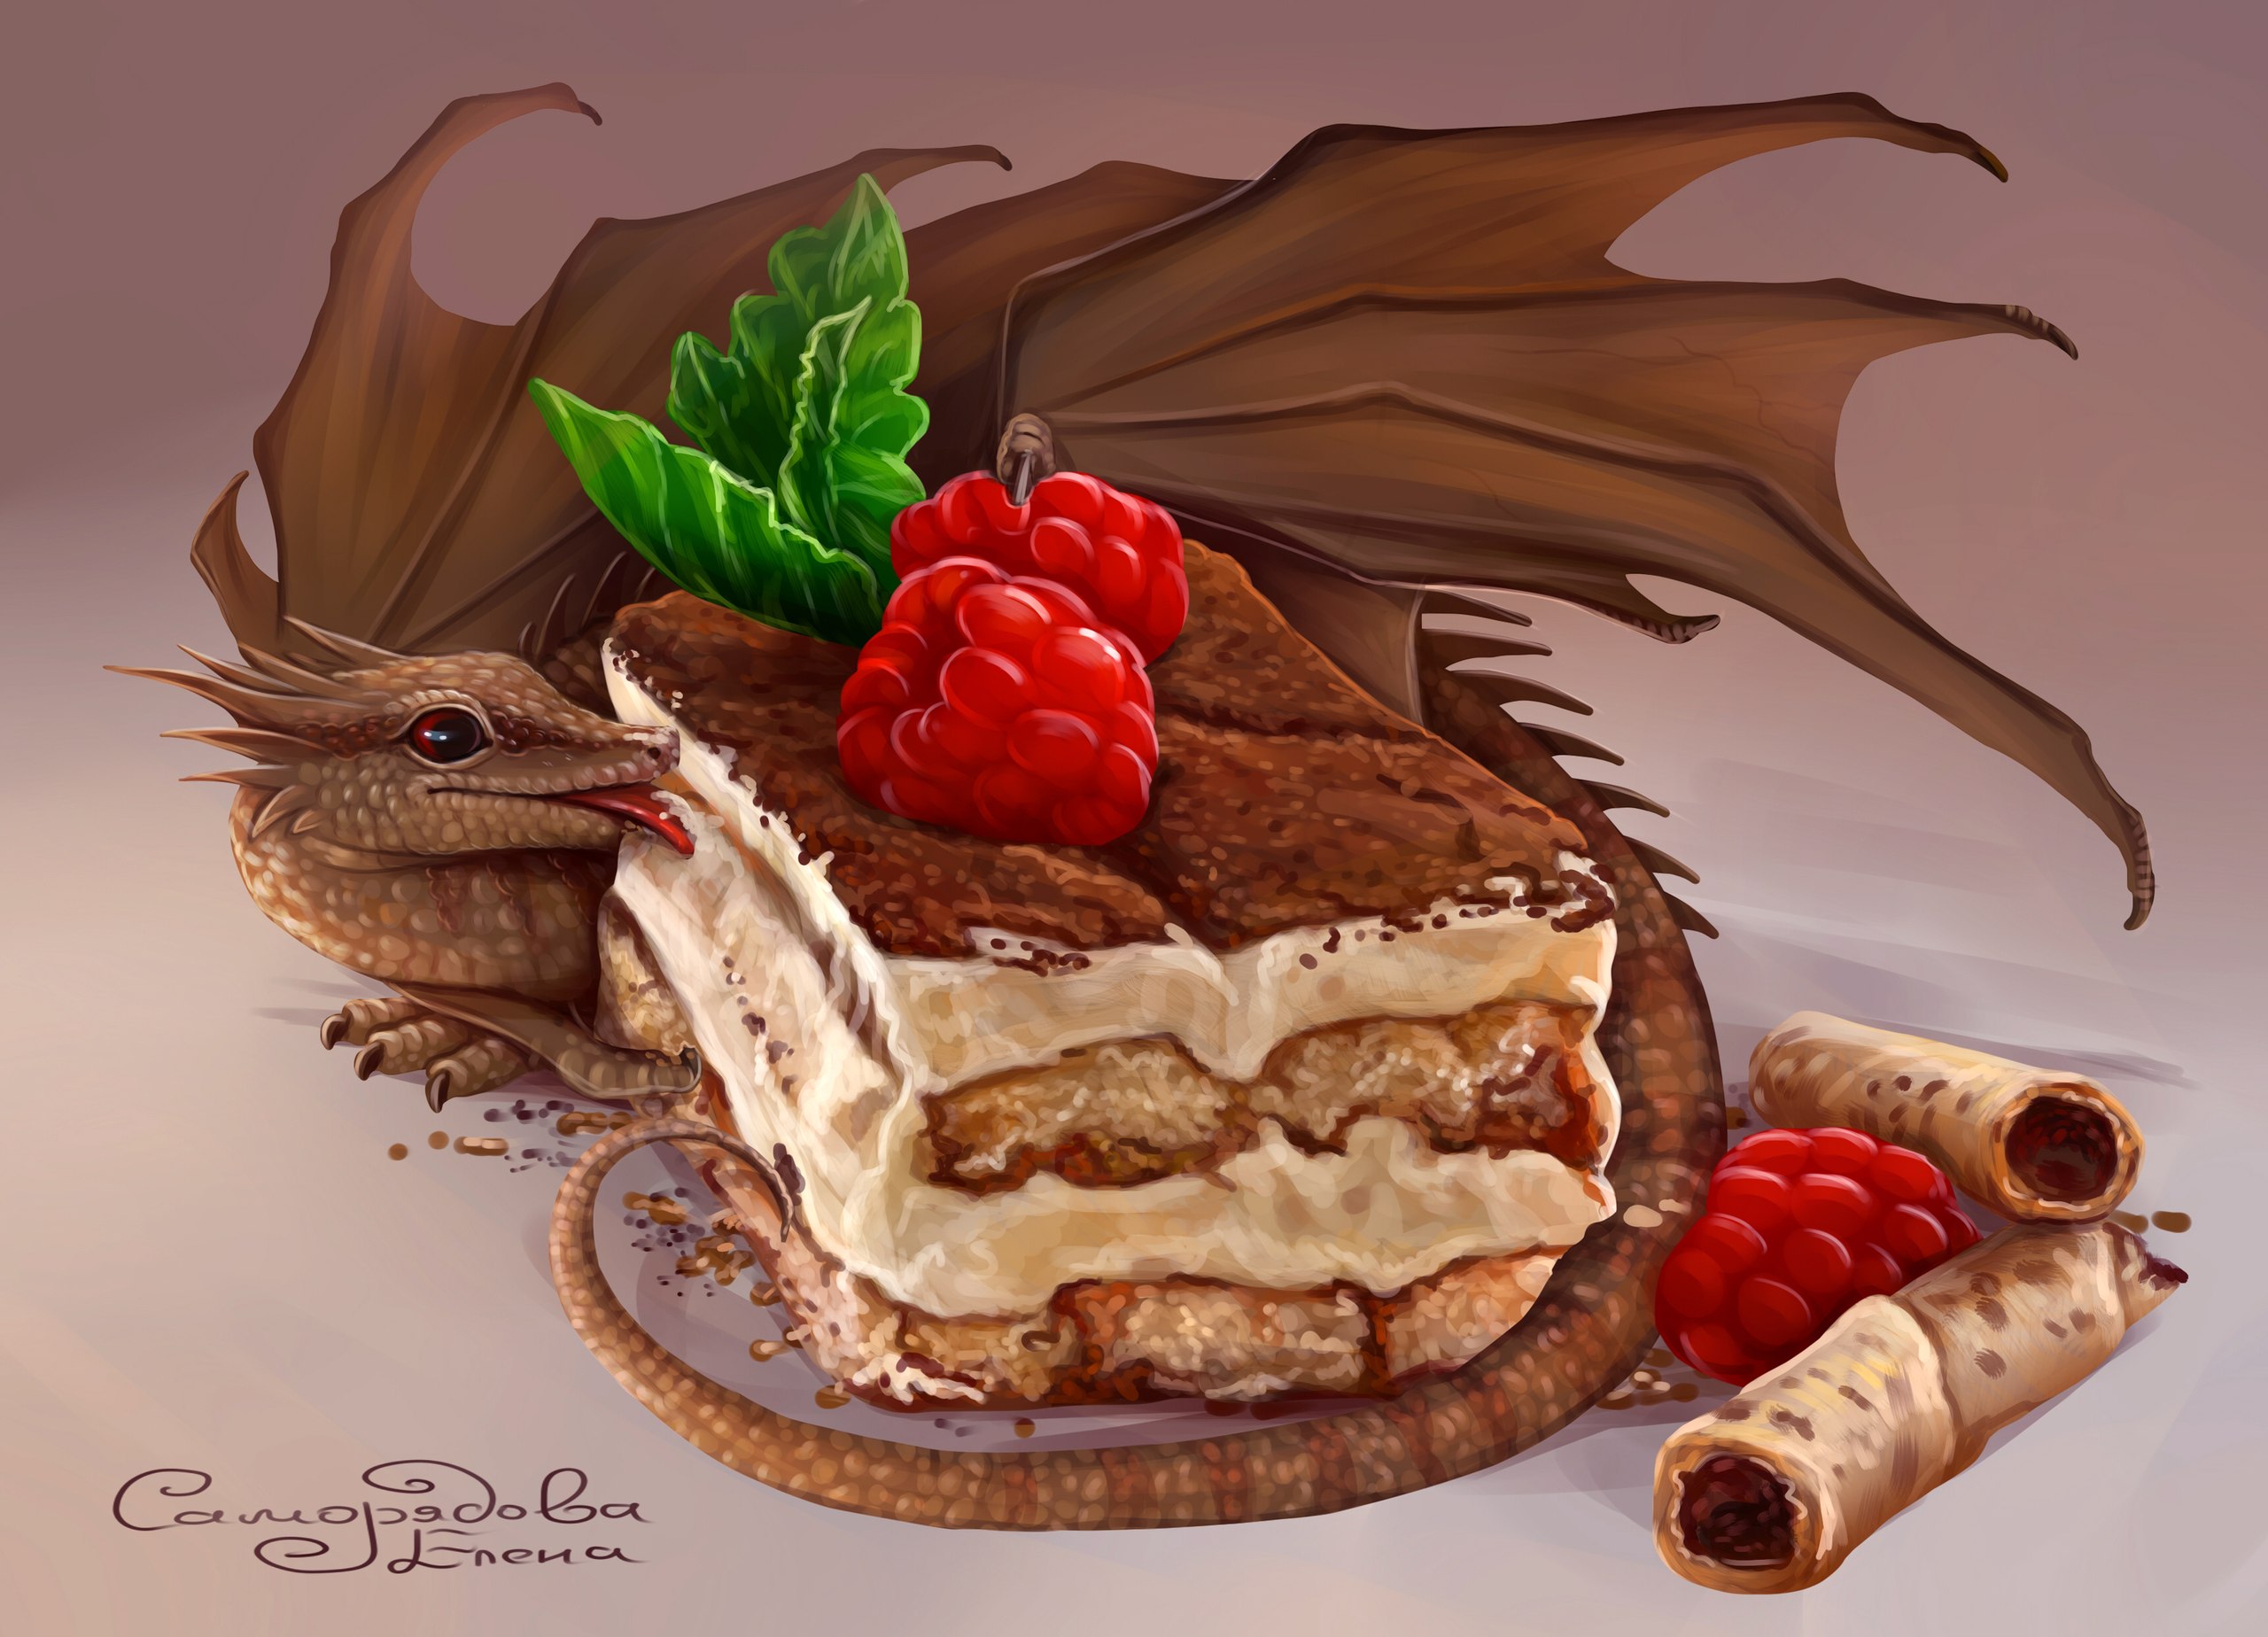 Дракон обед. Торт с драконом. Торт арты. Тортики в фэнтези стиле. Сладости арт.